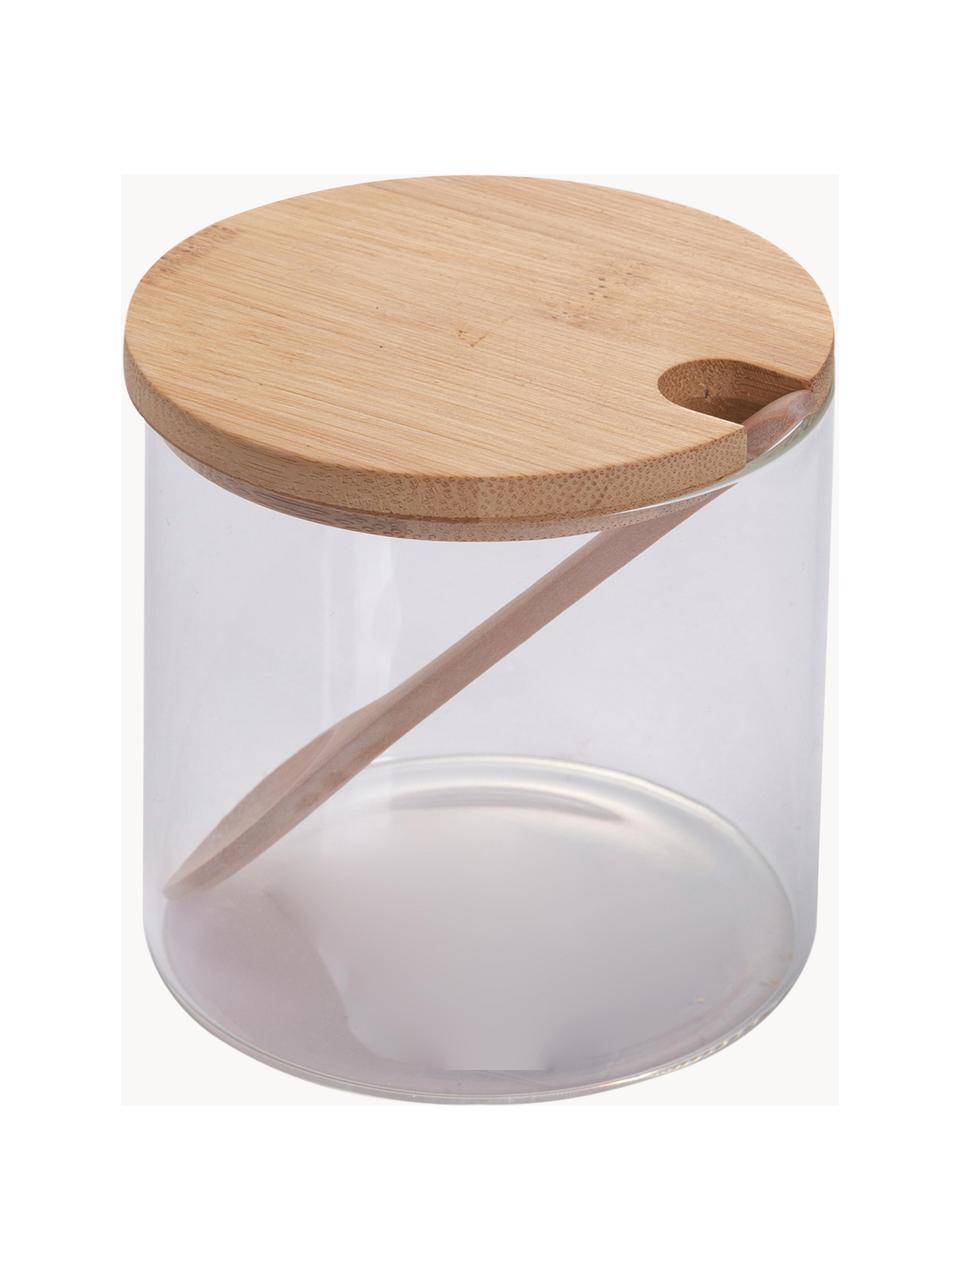 Zuccheriera con cucchiaio Len, Contenitore: vetro borosilicato, Trasparente, legno chiaro, Ø 10 x Alt. 10 cm